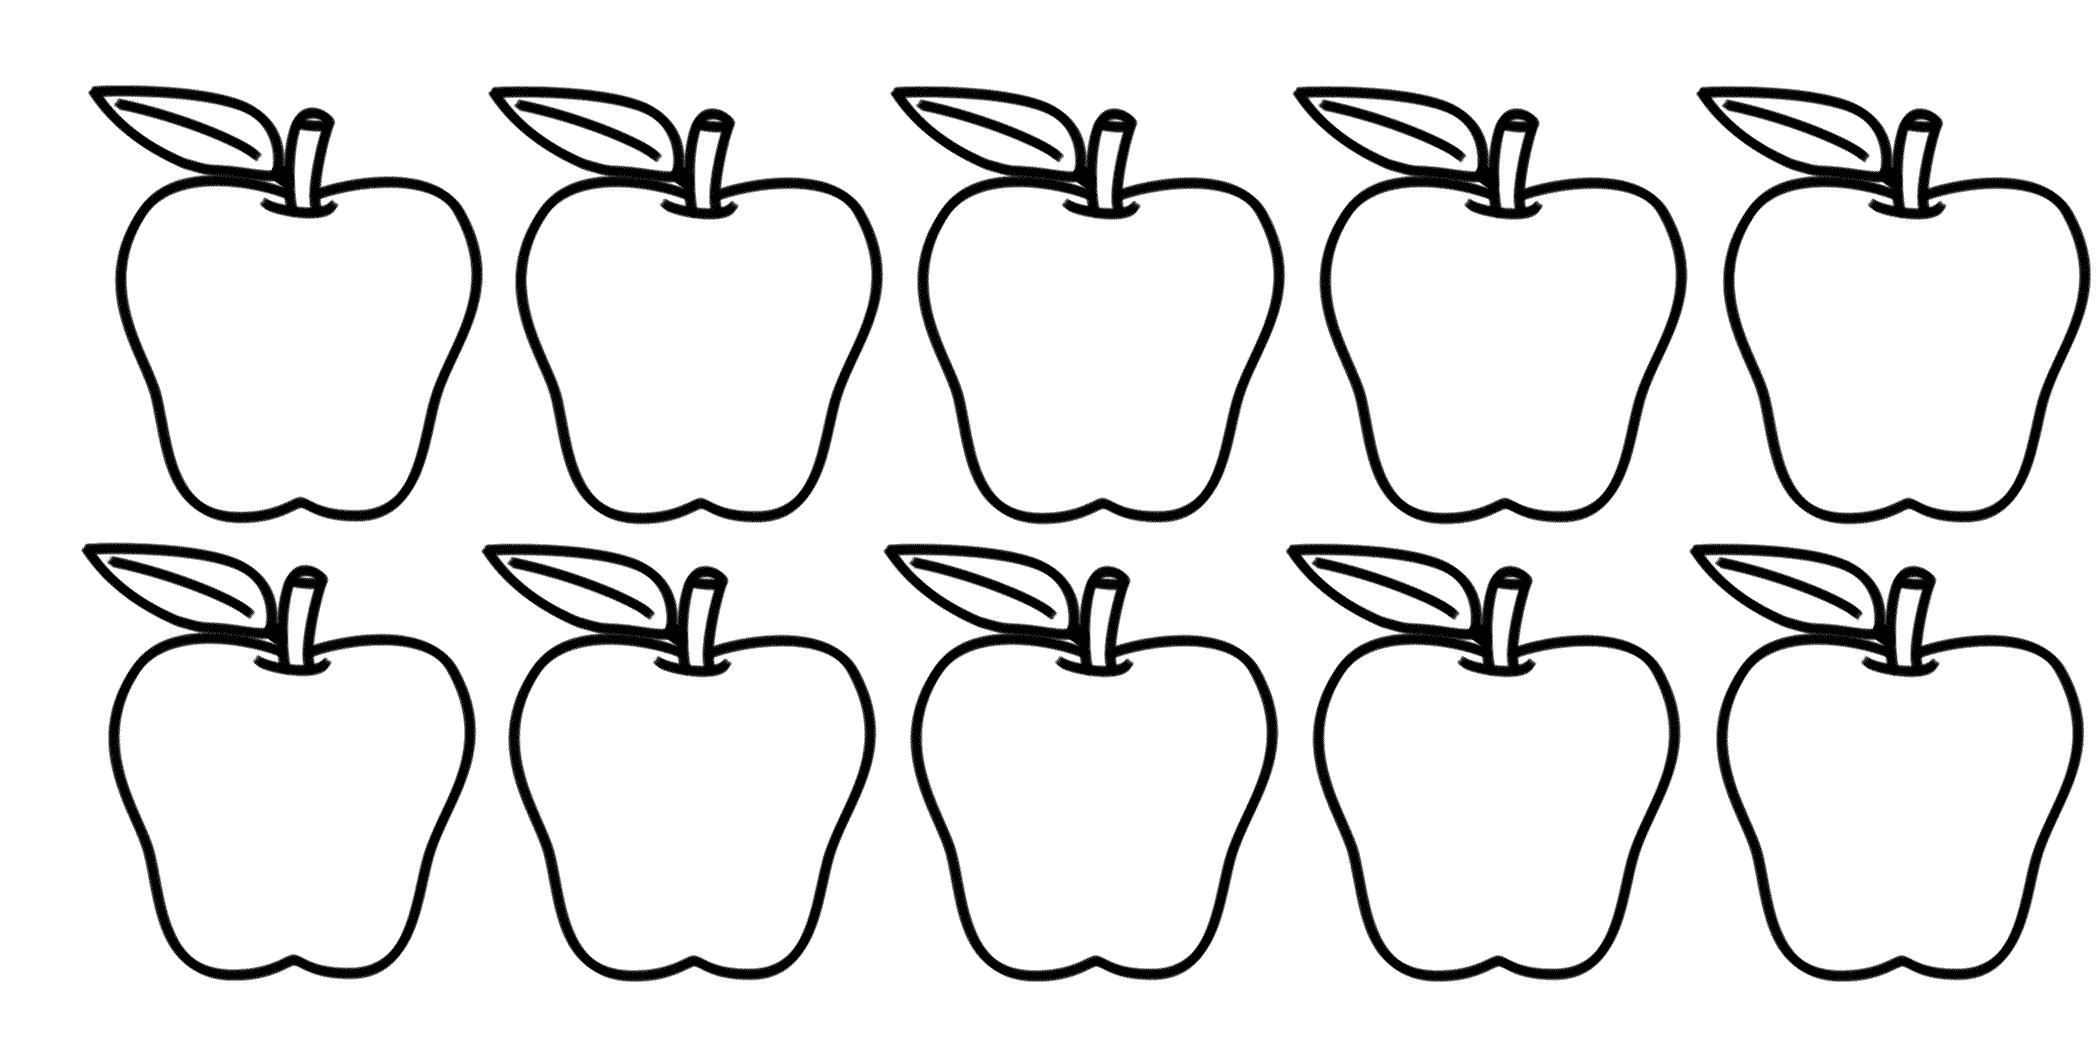 5 Яблок раскраска для детей